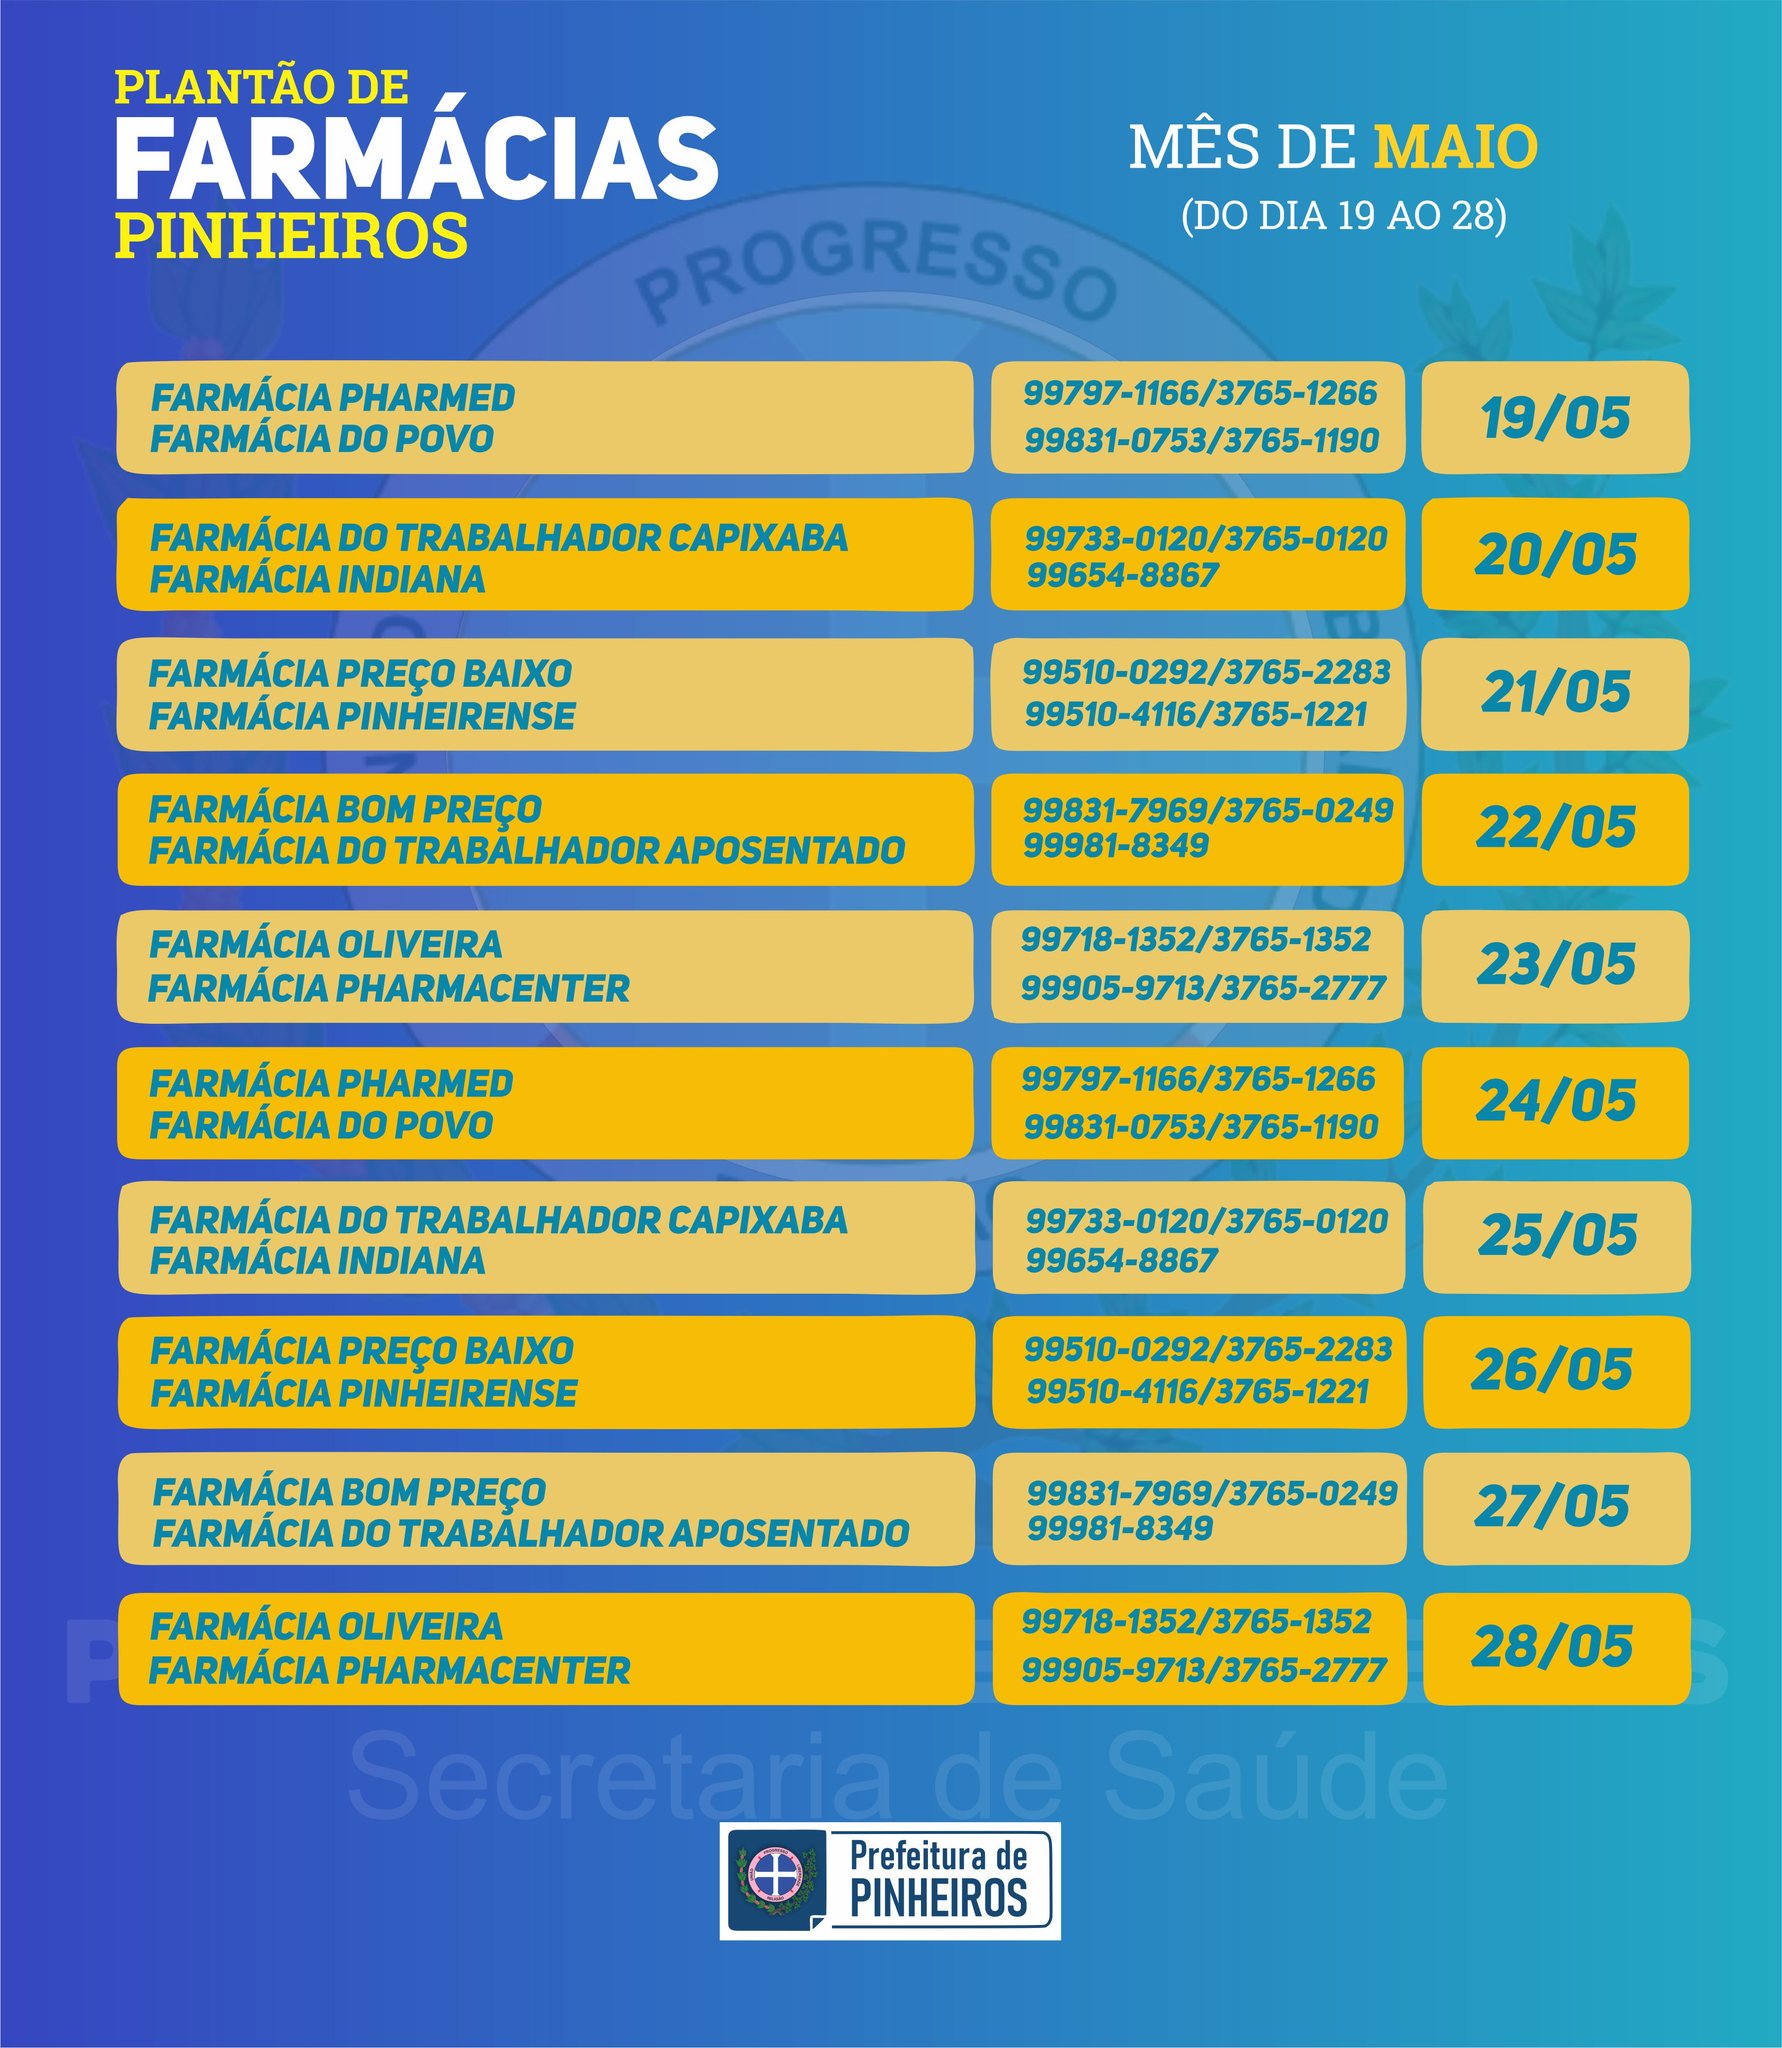 Calendário do Plantão de Farmácias do mês de MAIO